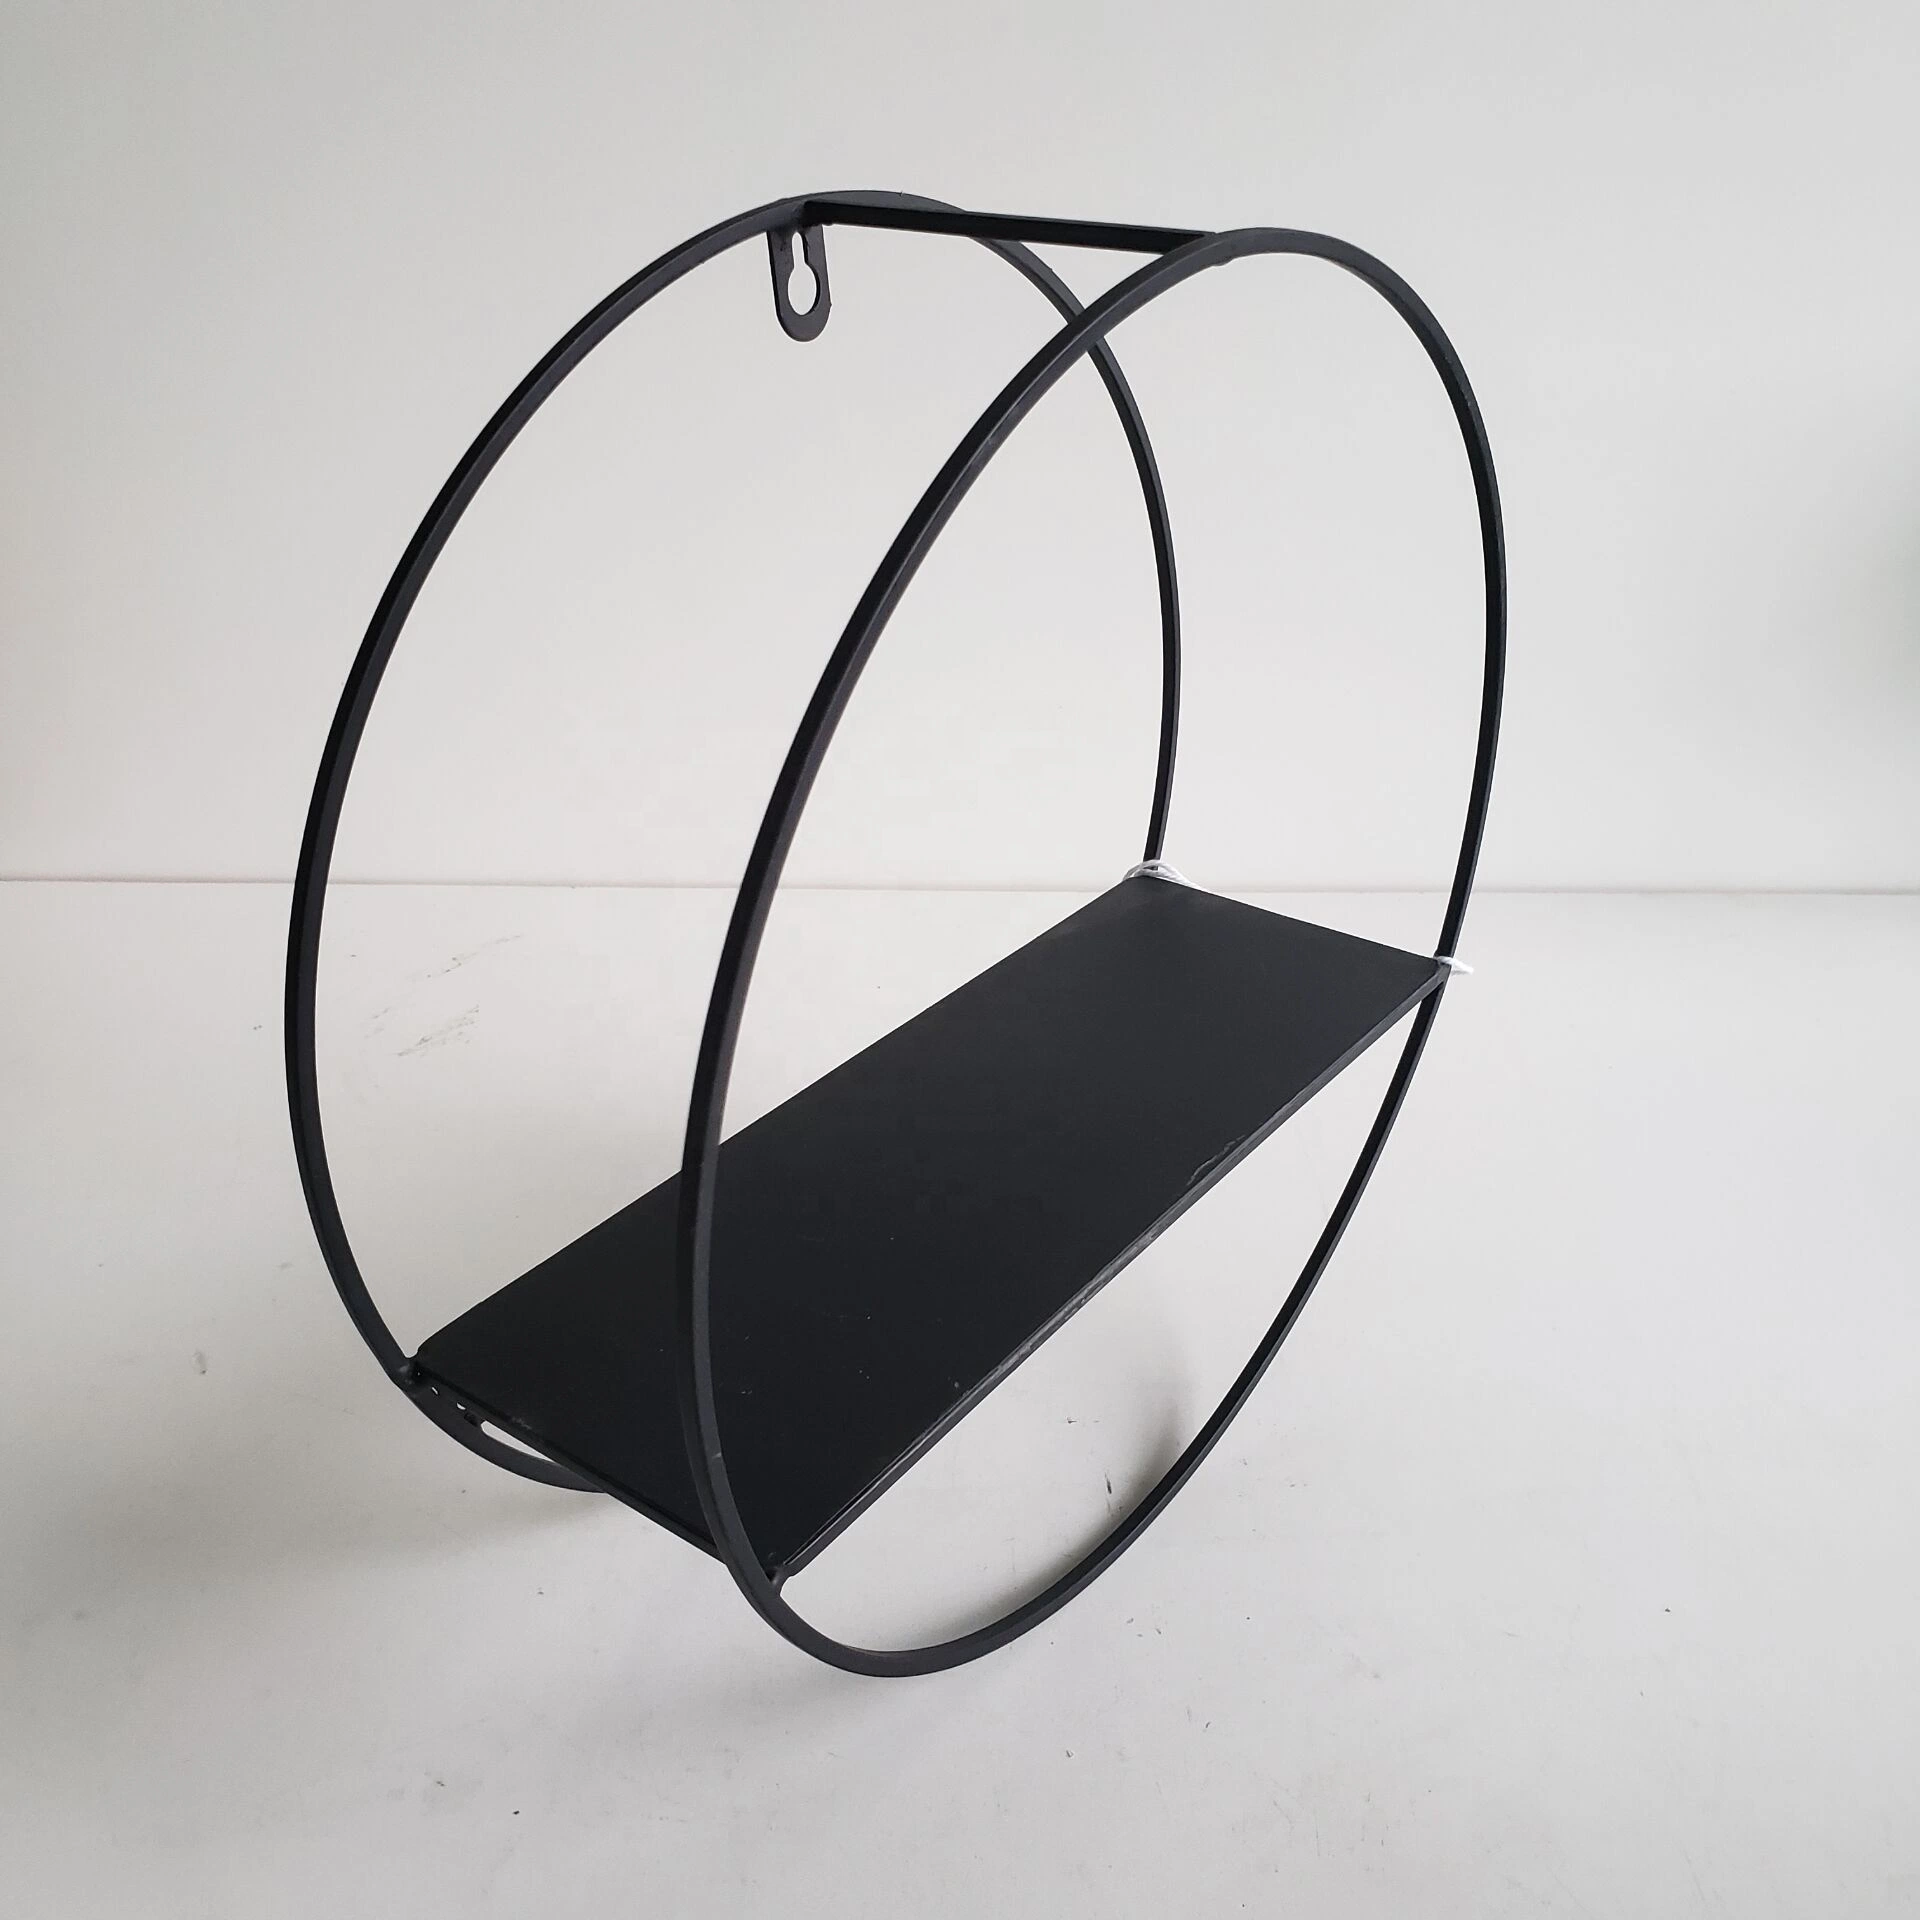 Venda a quente circular simples visualização de estilo preto decorativas Jardim fio metálico de Parede Prateleira decorativa suporte da Plantadeira